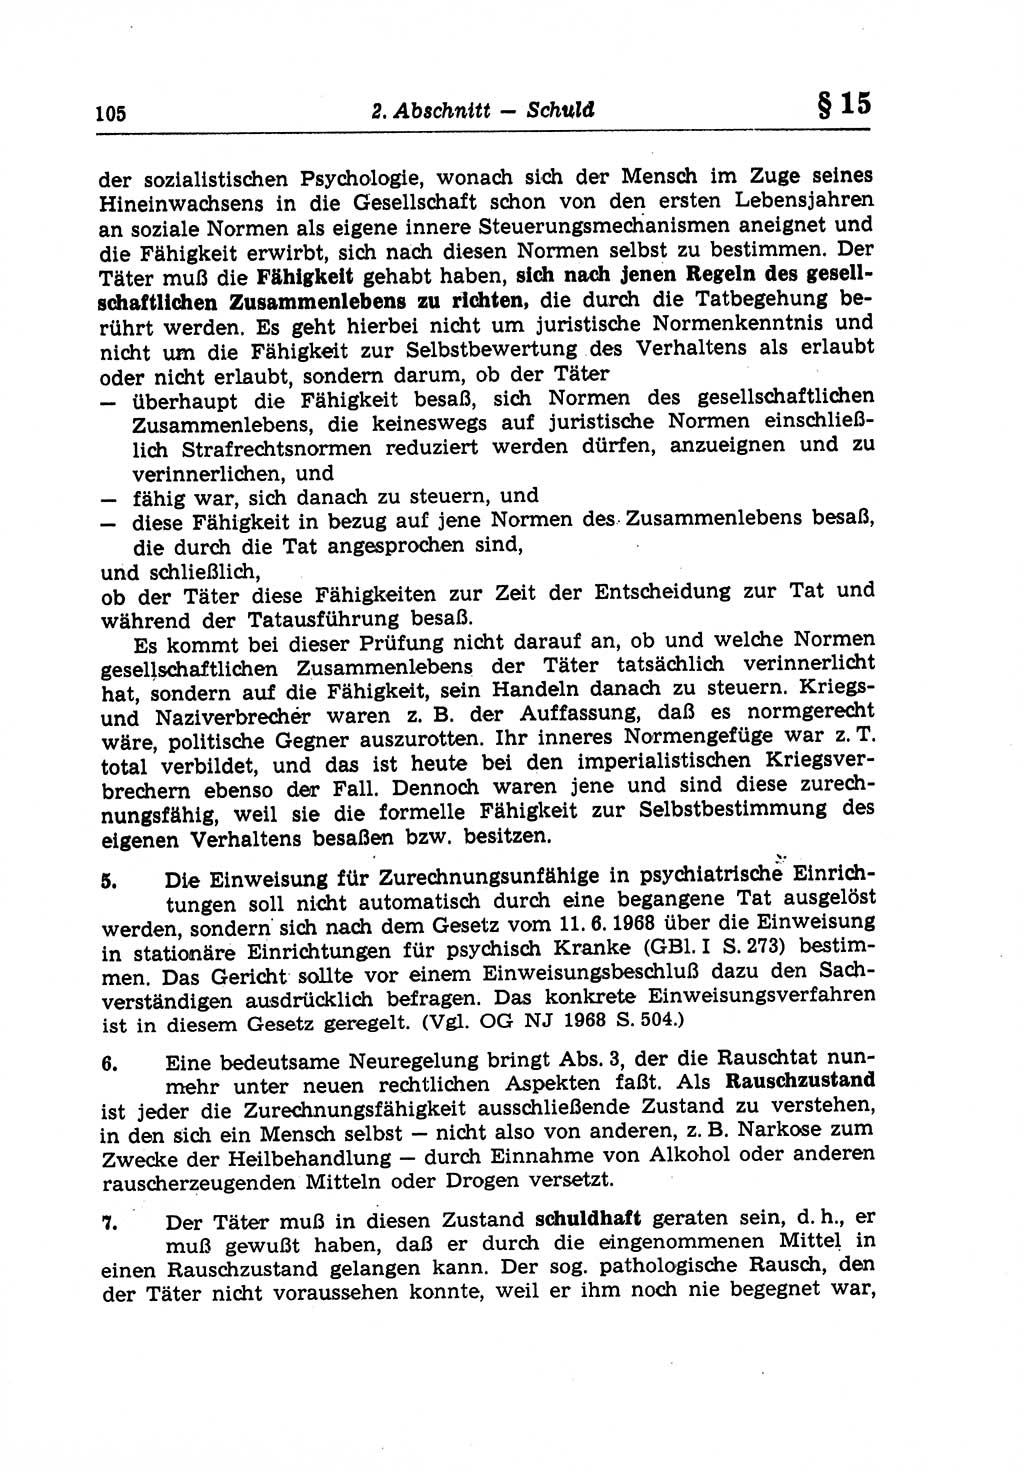 Strafrecht der Deutschen Demokratischen Republik (DDR), Lehrkommentar zum Strafgesetzbuch (StGB), Allgemeiner Teil 1970, Seite 105 (Strafr. DDR Lehrkomm. StGB AT 1970, S. 105)